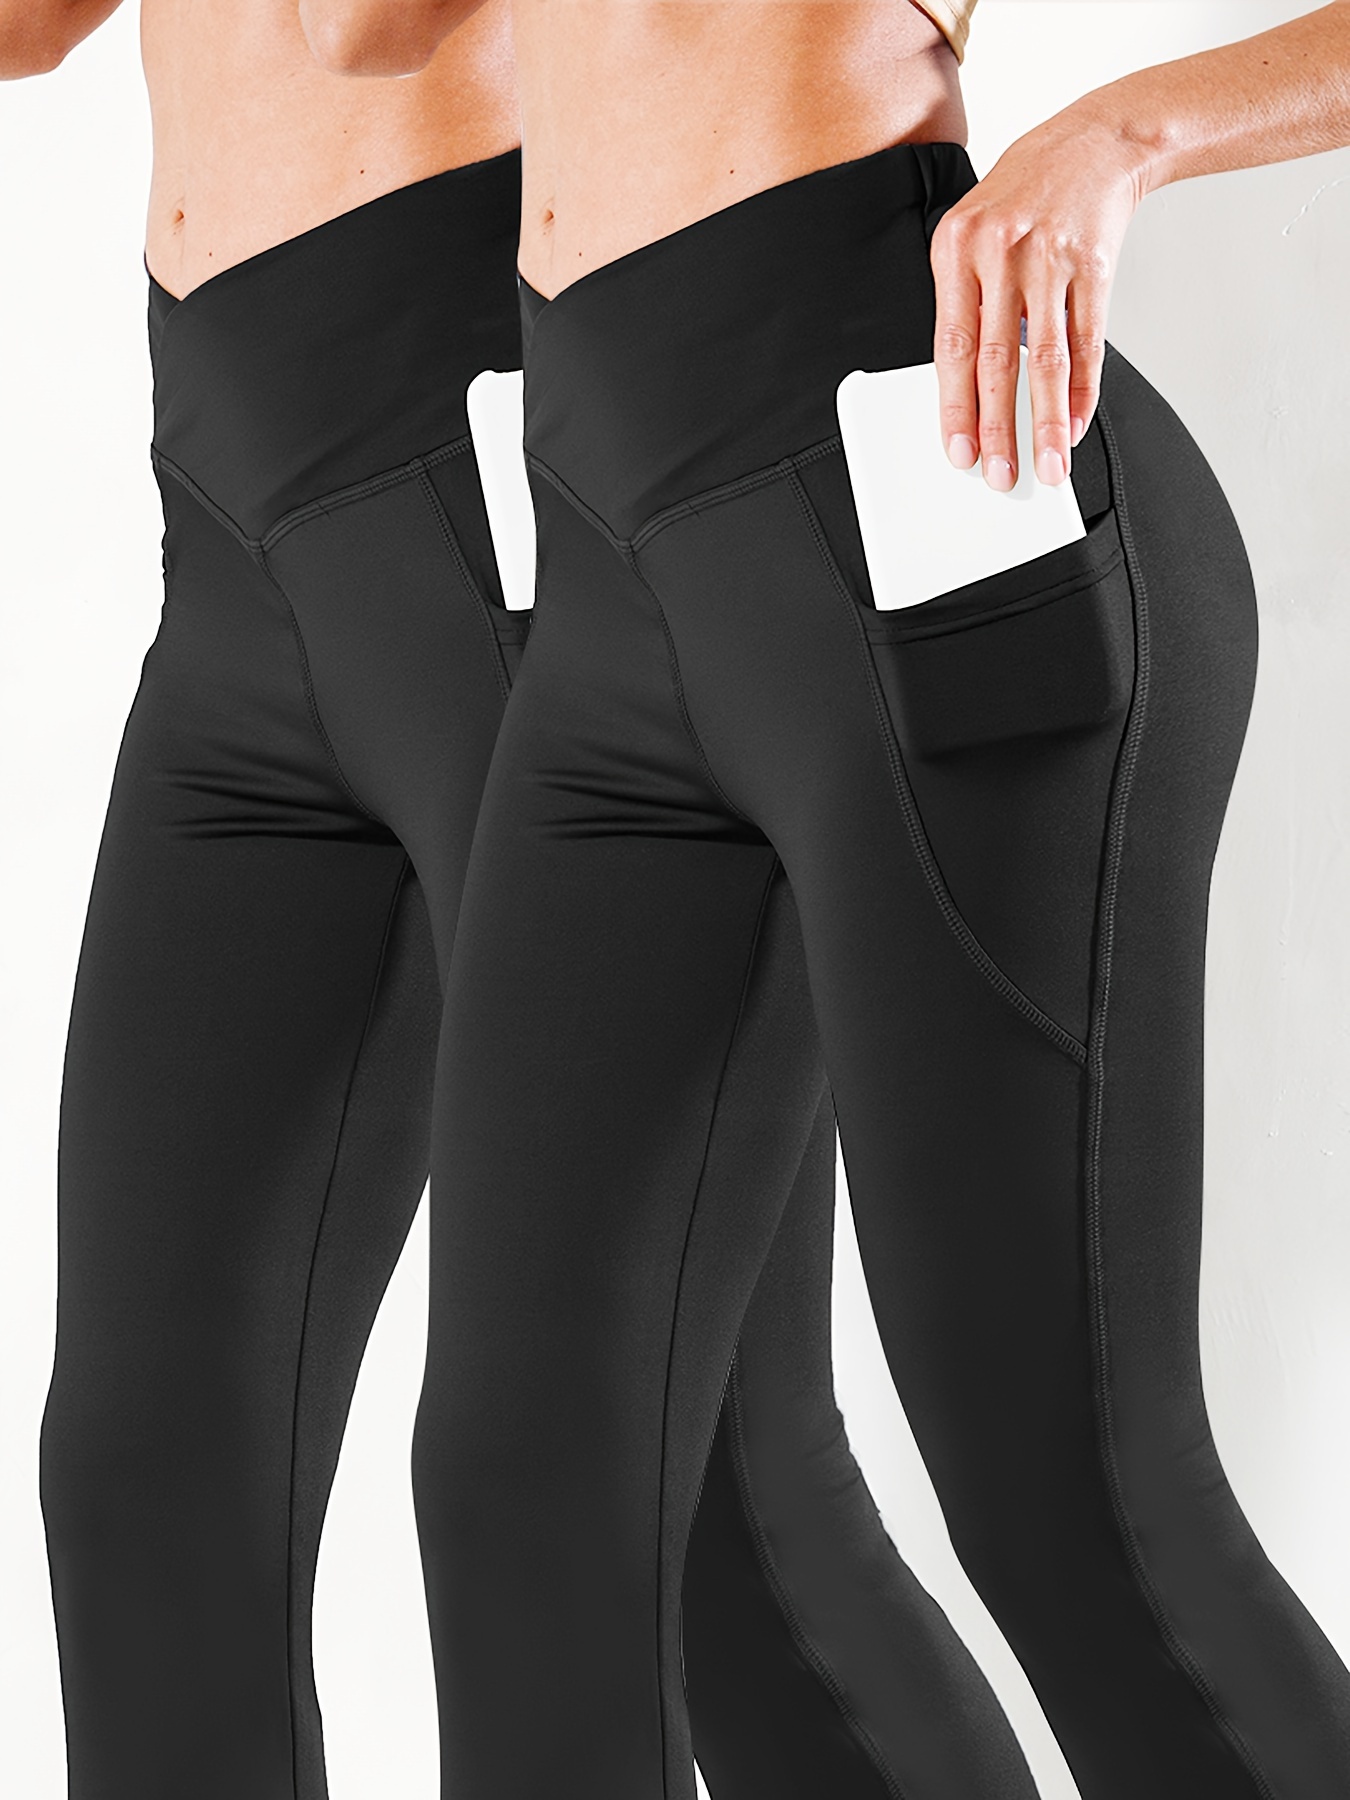 Women's High Waist Flare Leg Yoga Pants - Stretchy, Slim Fitting, Ankle  Length Fitness Leggings for Active Women